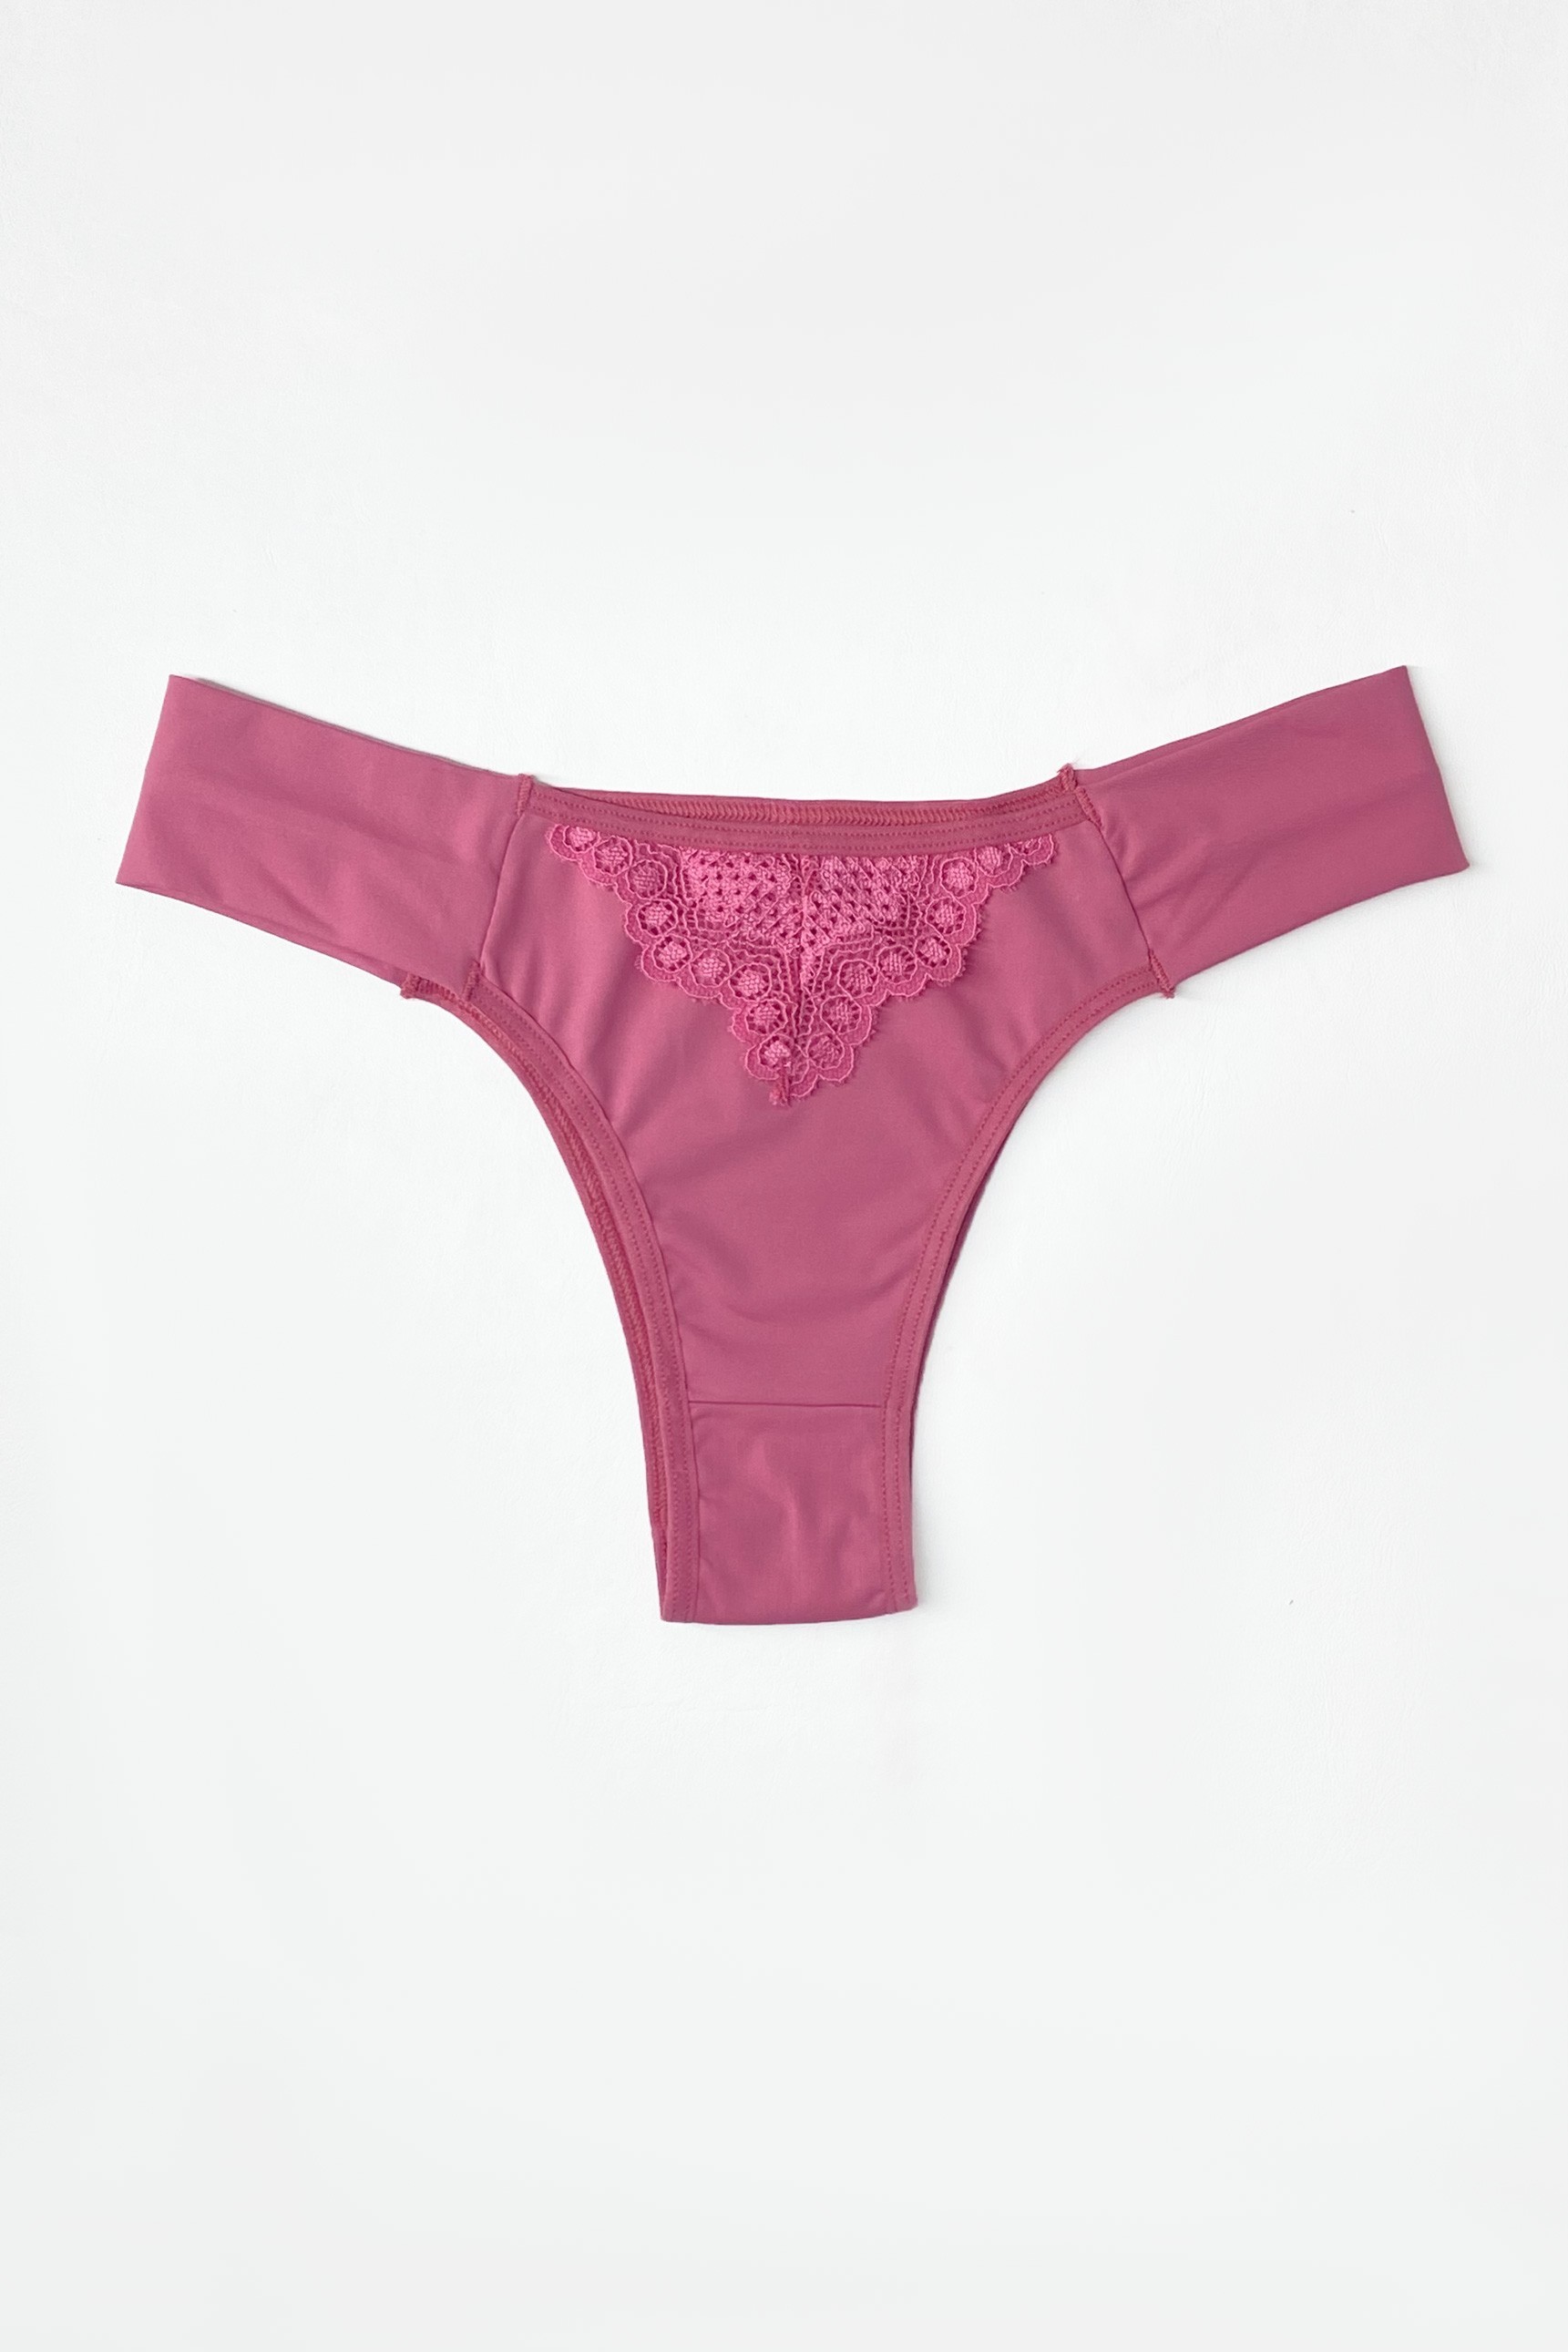 Calcinha Victorias Secret Algodão Cheeky Panty Pink Sorbet